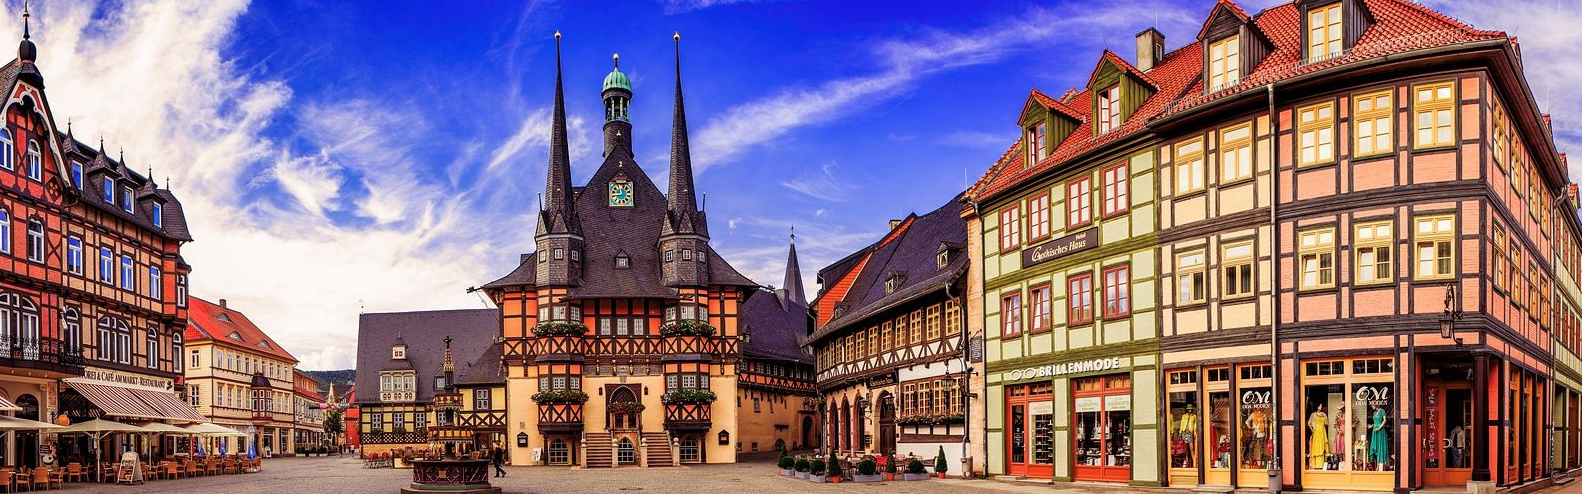 Marktplatz und Rathaus der Stadt Wernigerode (Foto: Andreas Weidner)